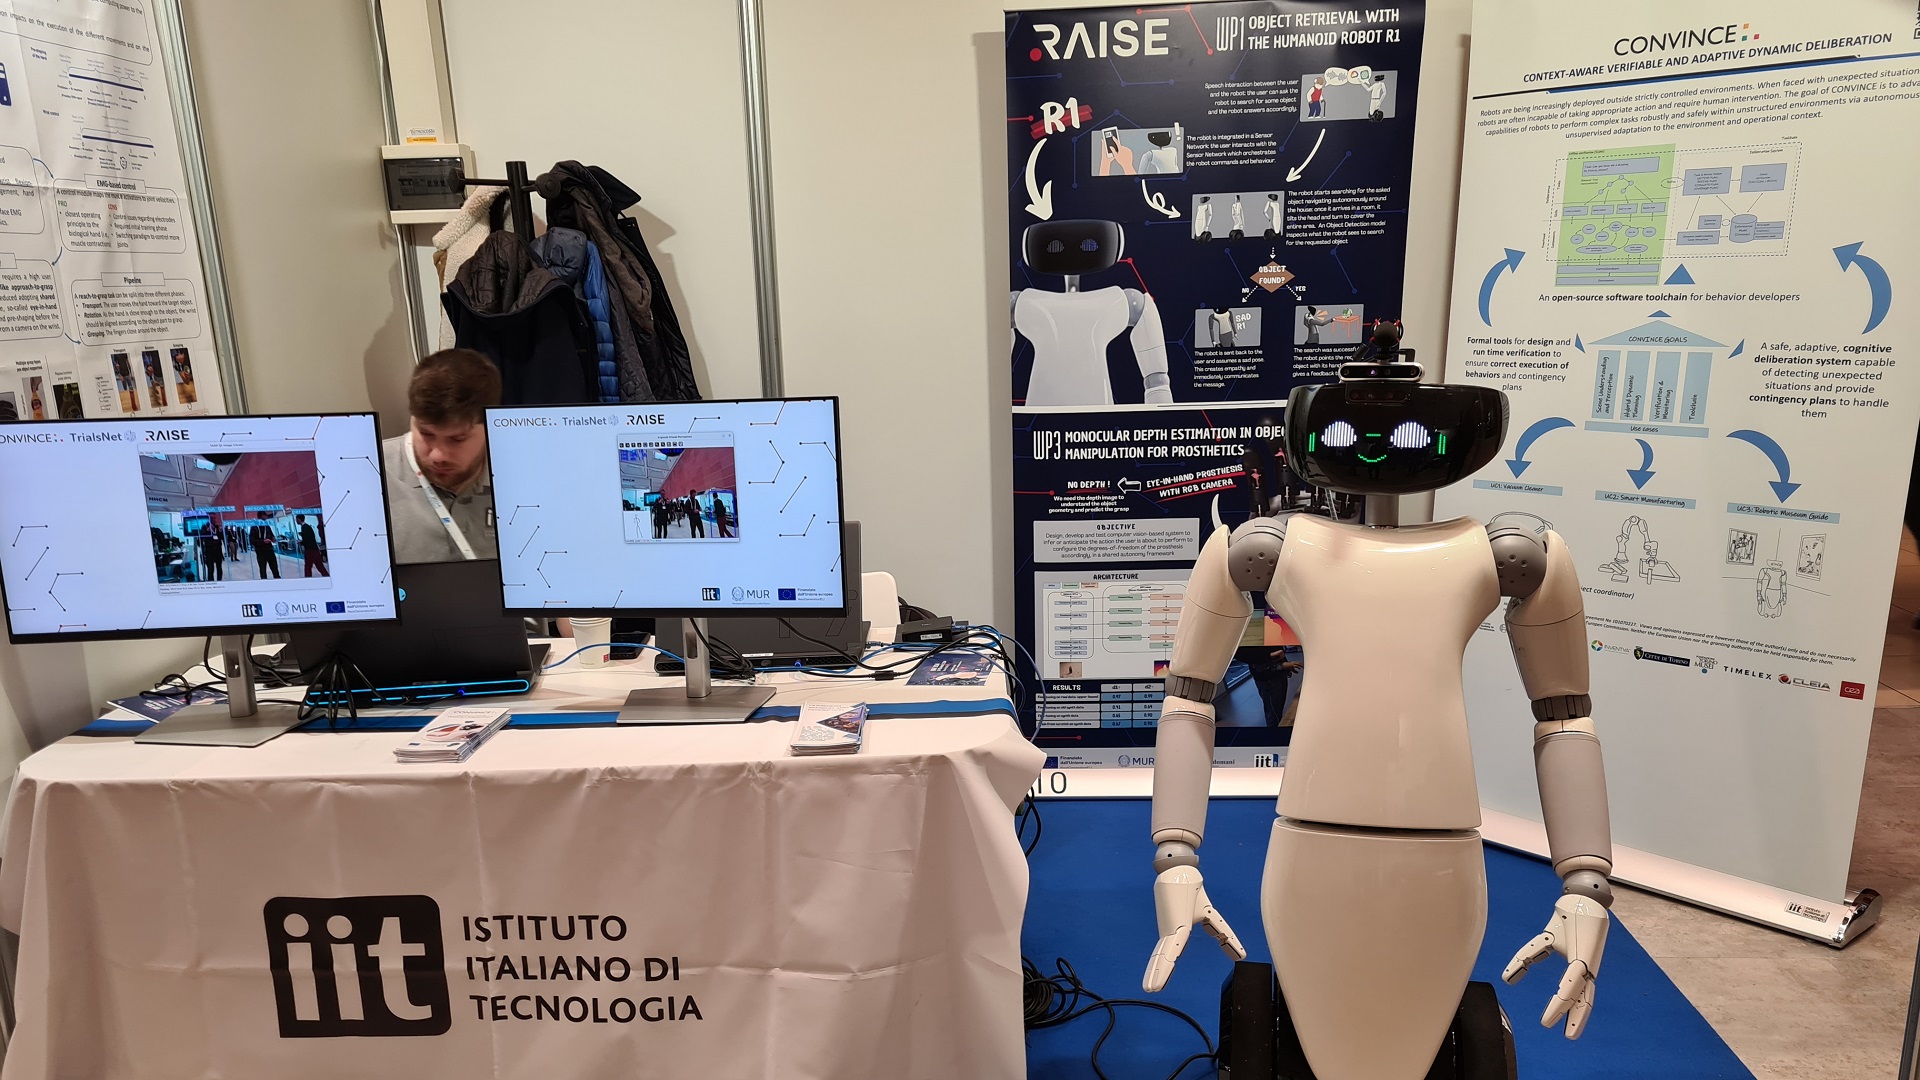 Primi risultati di RAISE nell’ambito della salute, intelligenza artificiale e robotica, al Forum Europeo della Robotica